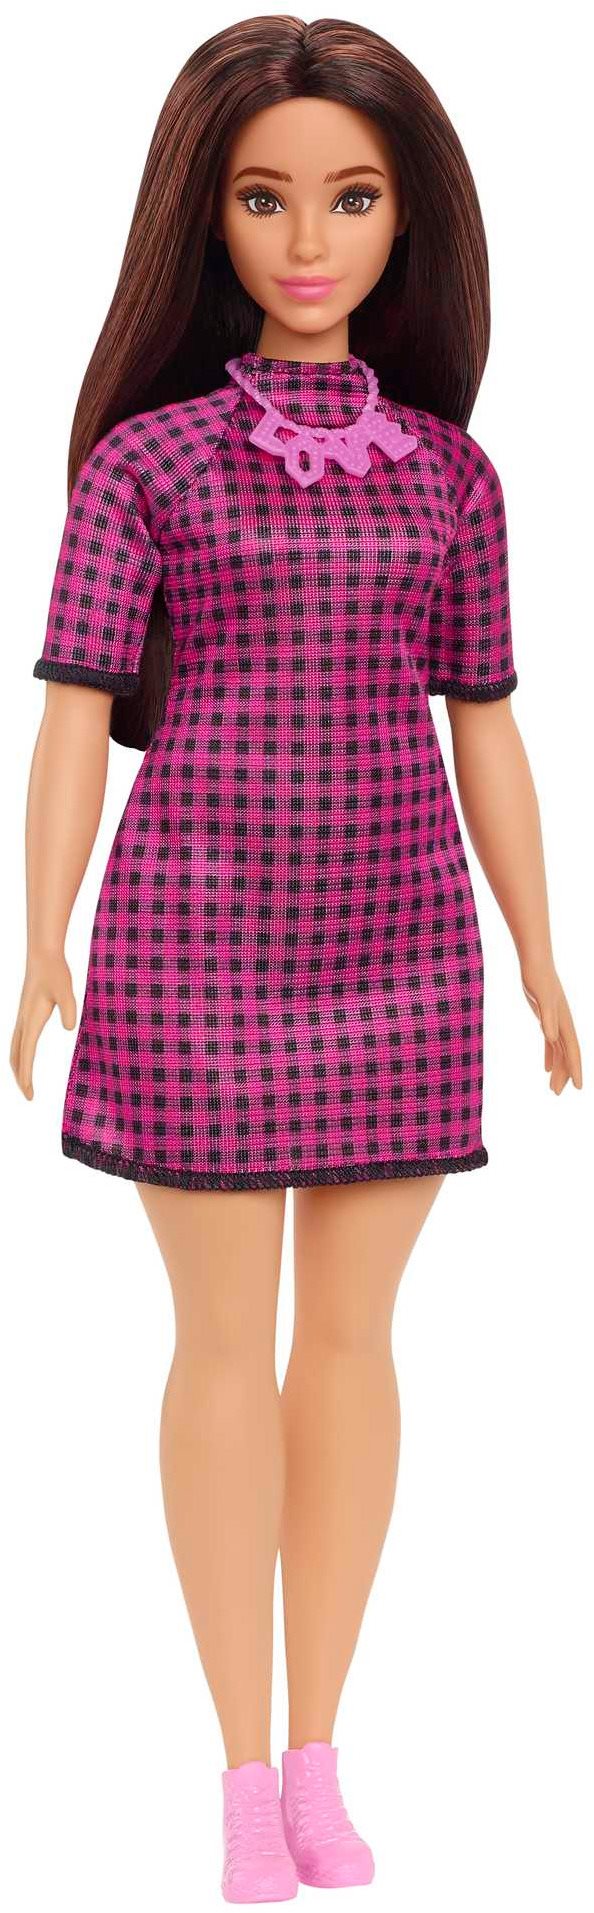 Barbie Modell - Fekete-rózsaszín kockás ruha